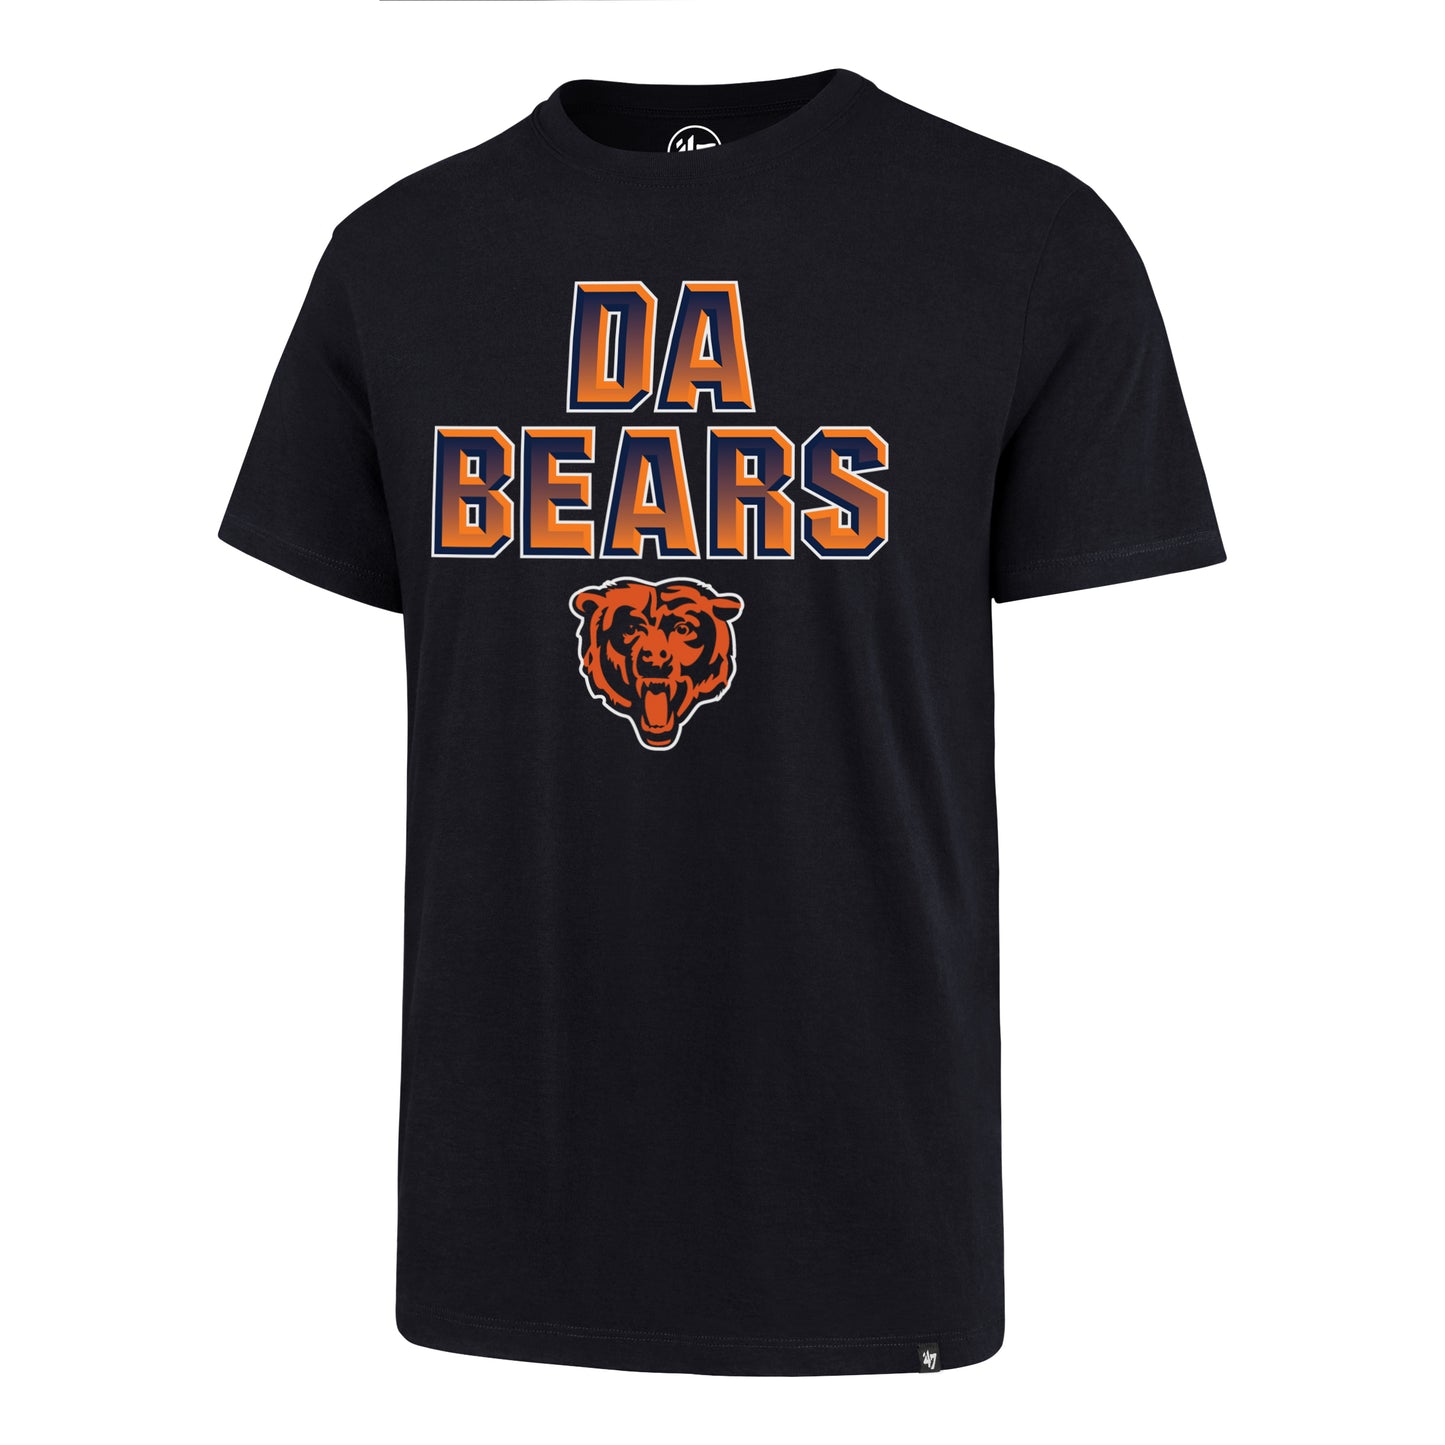 Men's Chicago Bears NFL "Da Bears" Regional Super Rival Tee By ’47 Brand